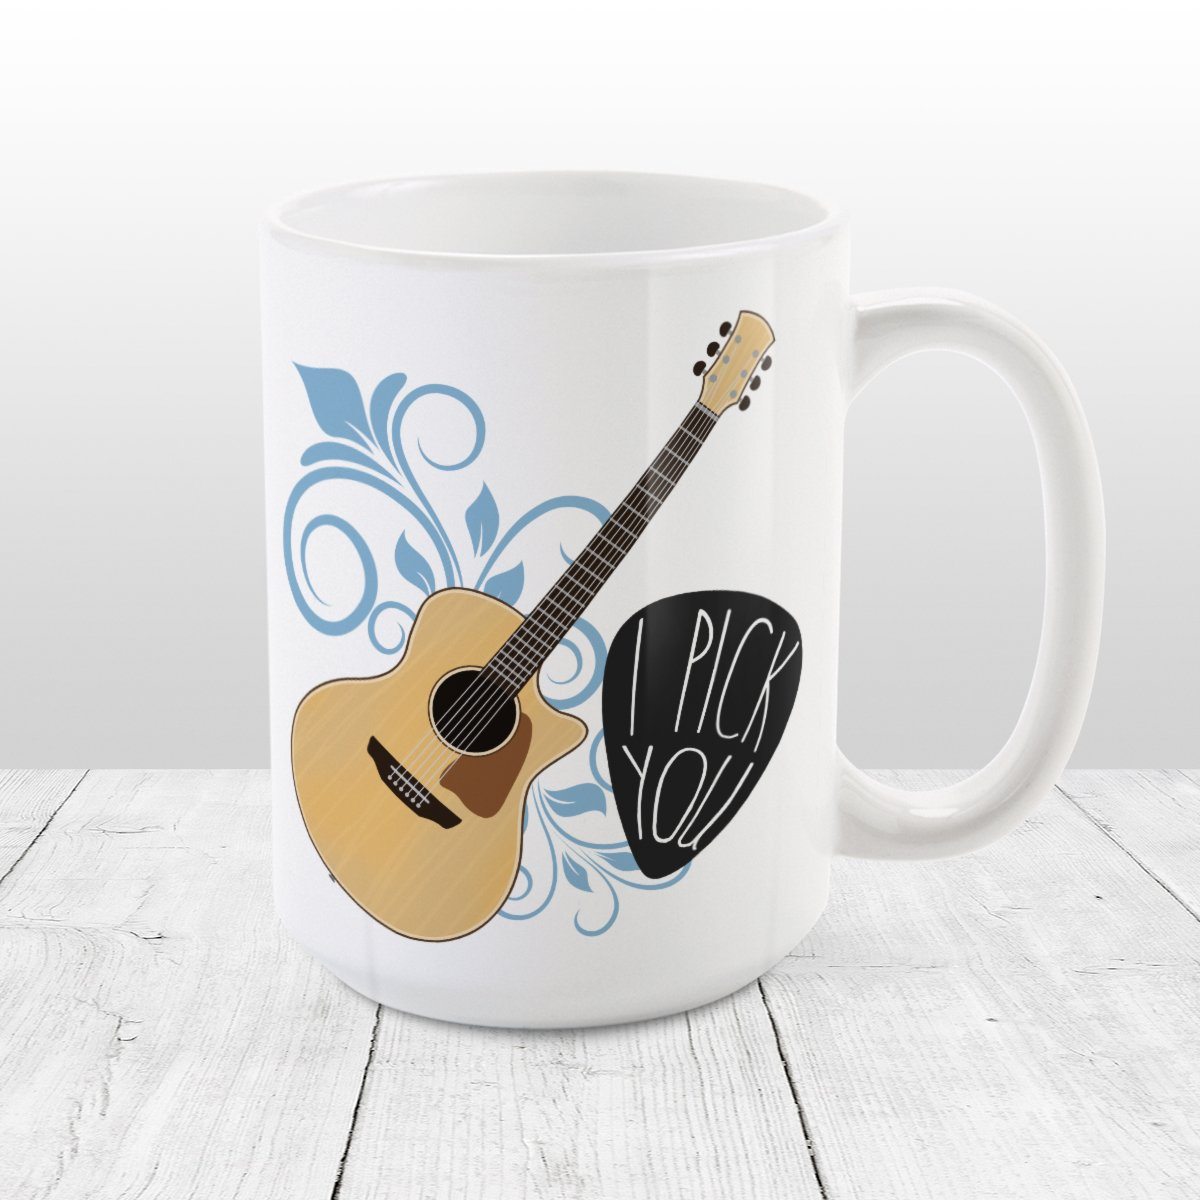 I Pick You - Guitar Mug at Amy's Coffee Mugs